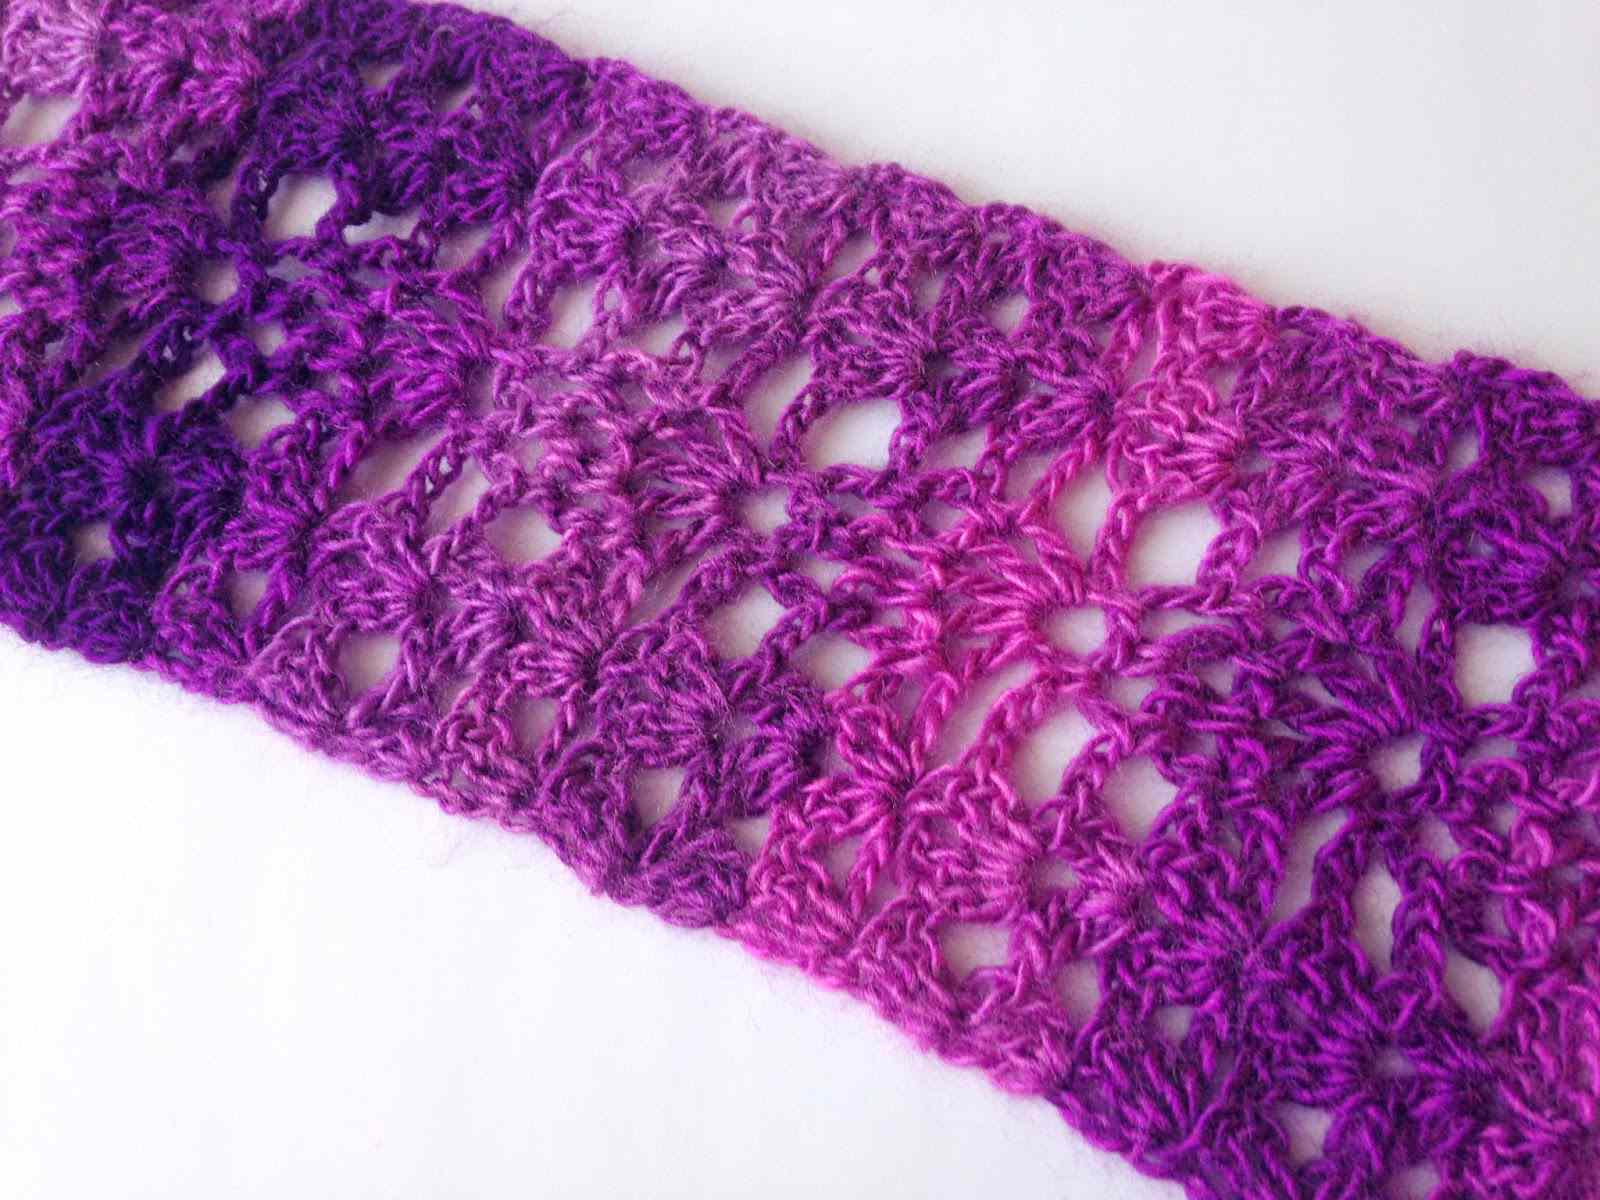 Crochet Scarf Pattern Free 10 Easy Free Crochet Lace Scarf Patterns